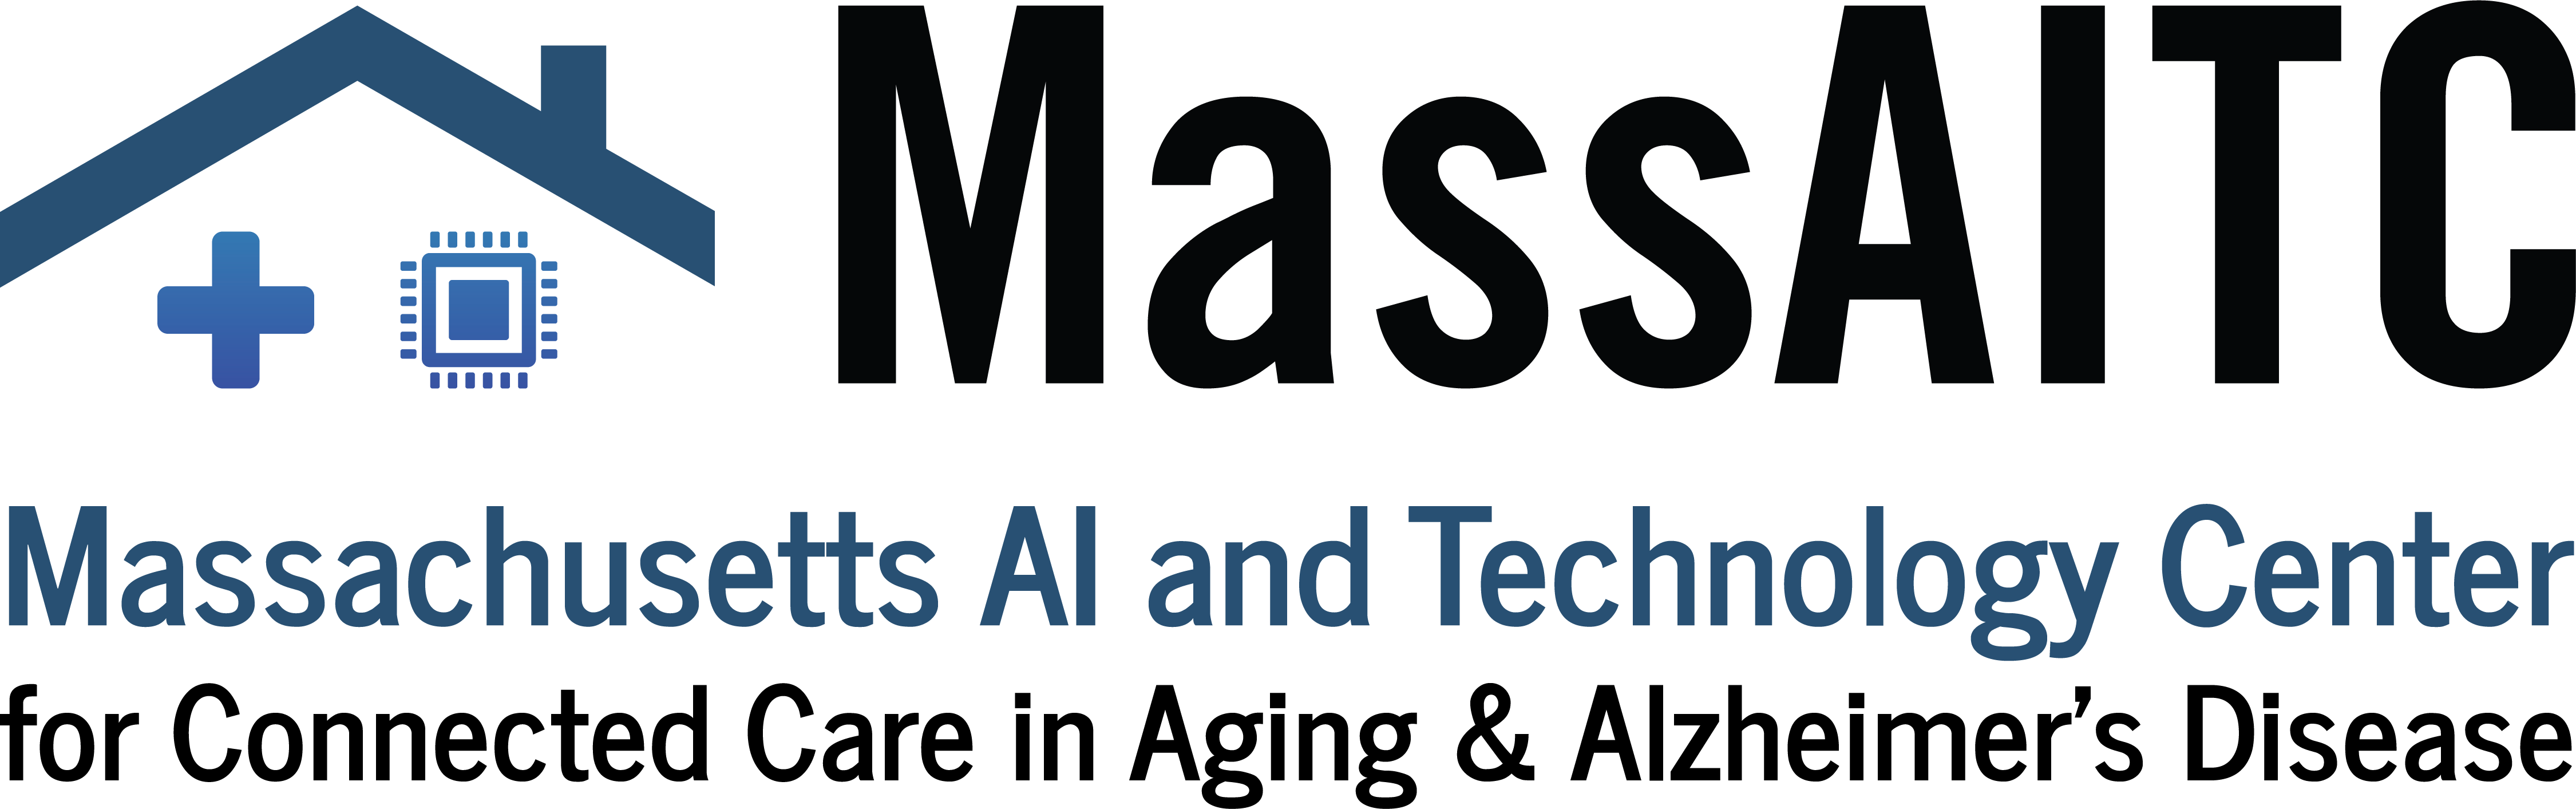 MassAITC logo